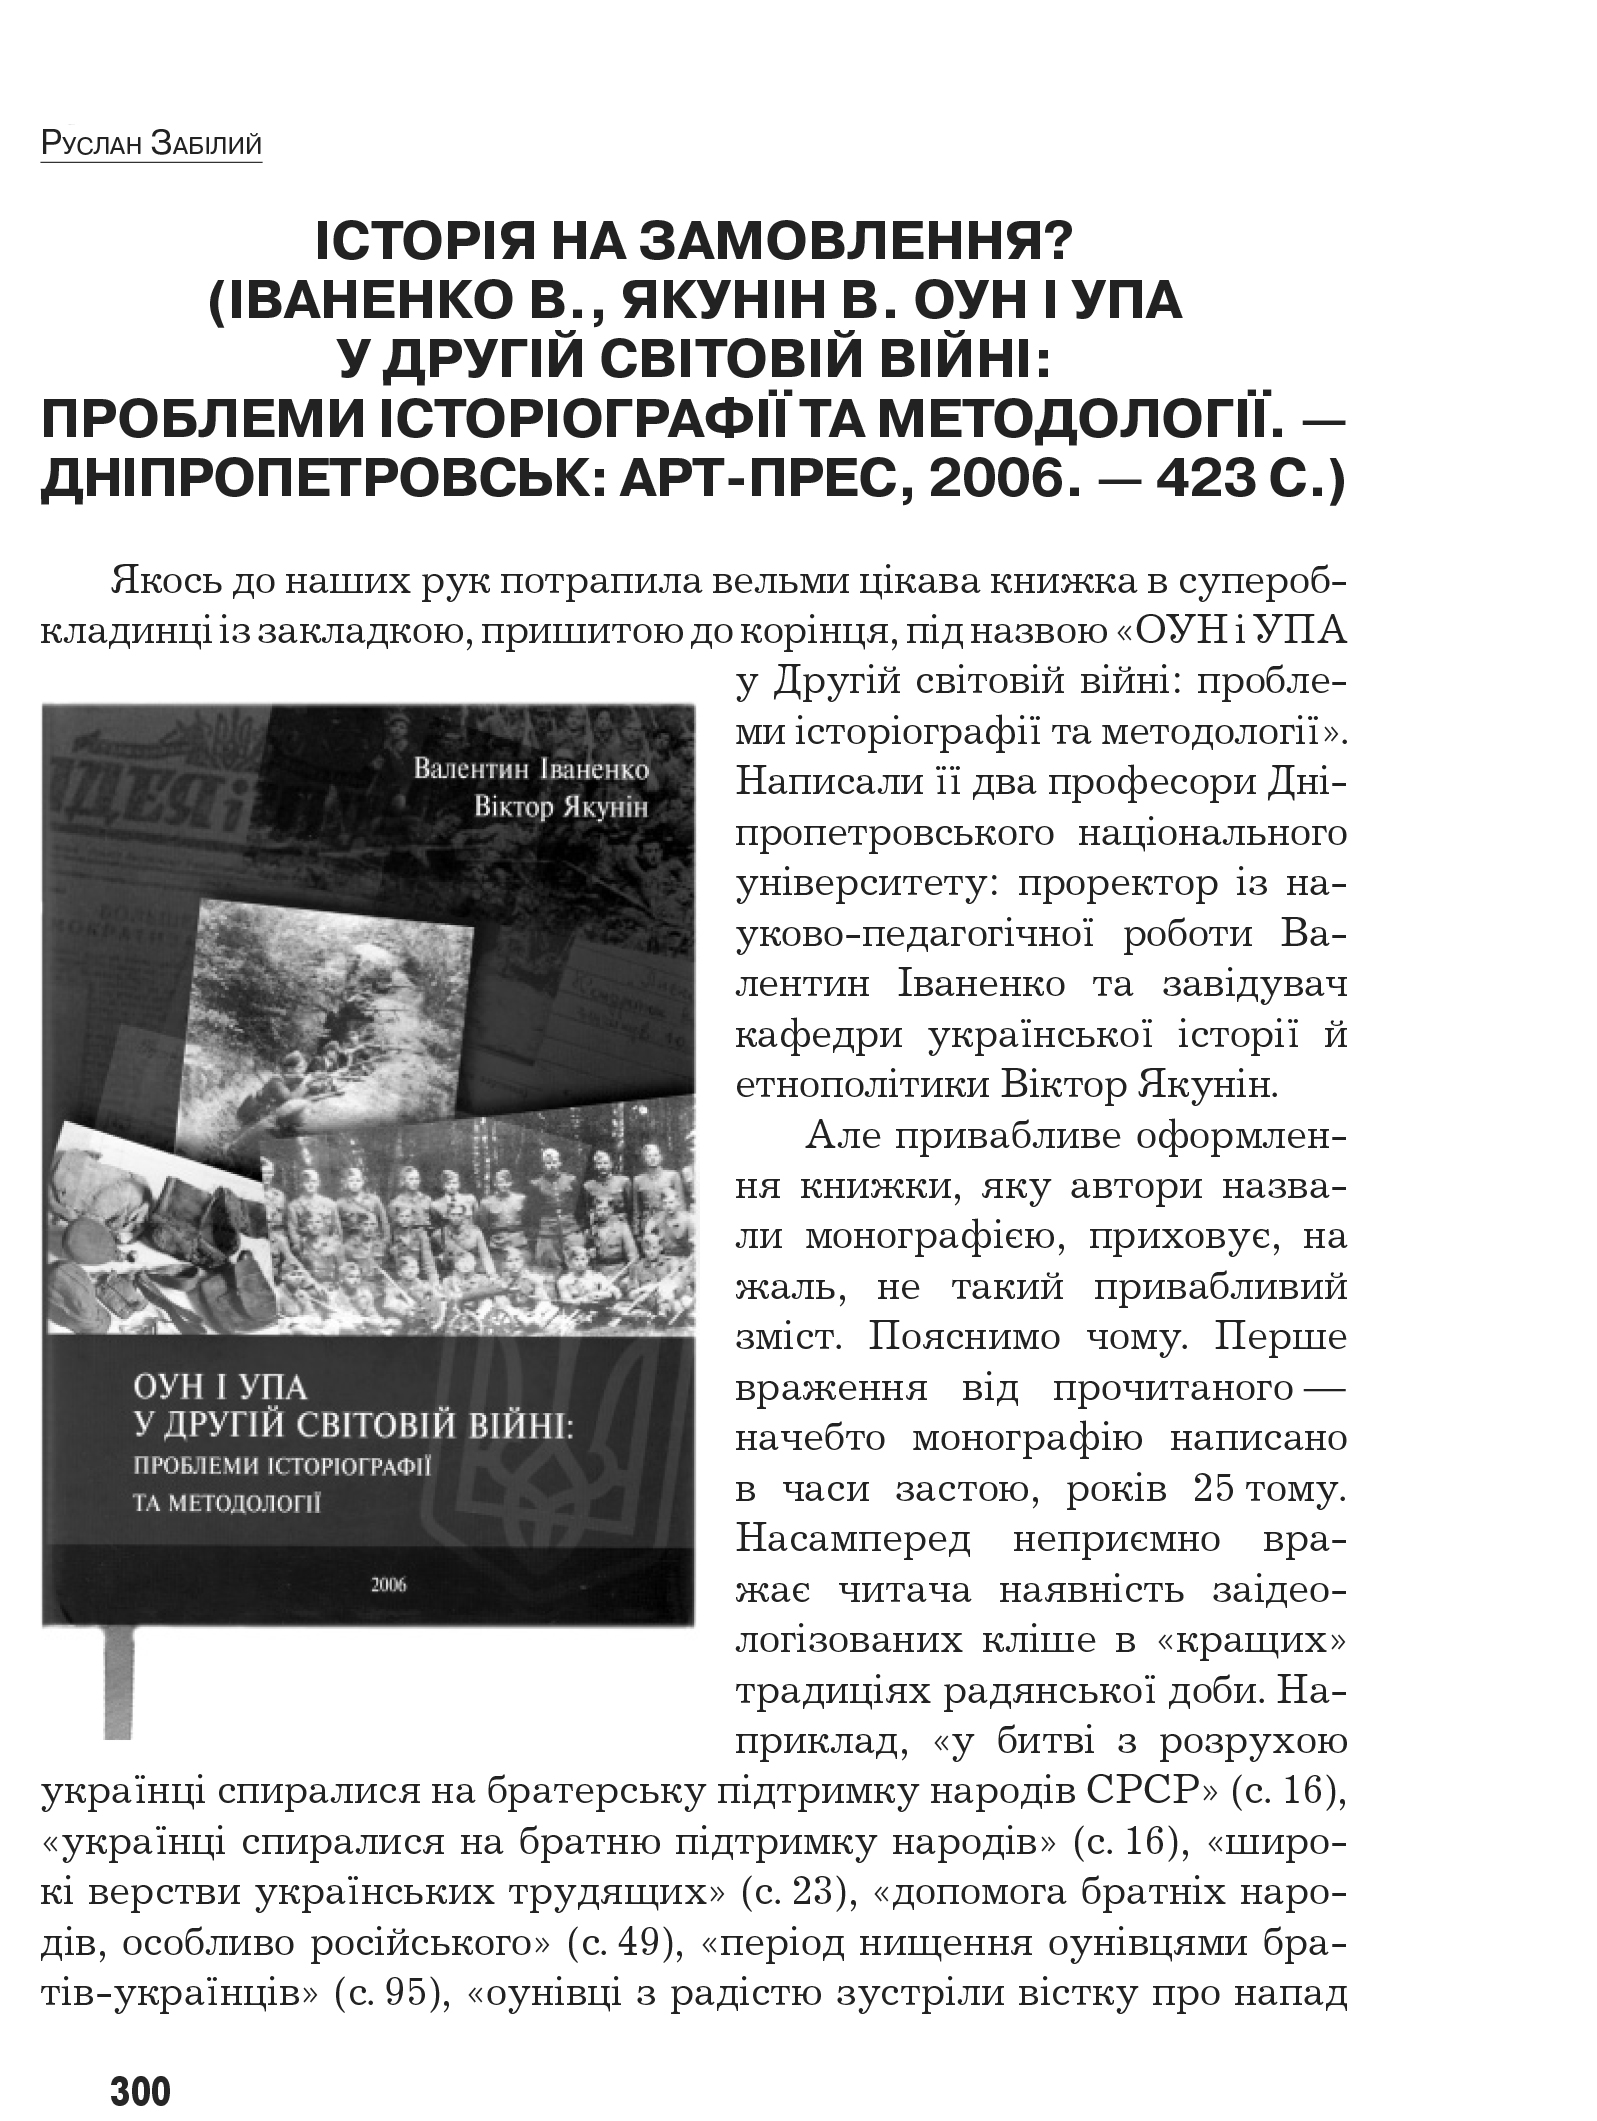 Український визвольний рух №9, ст. 300 - 308